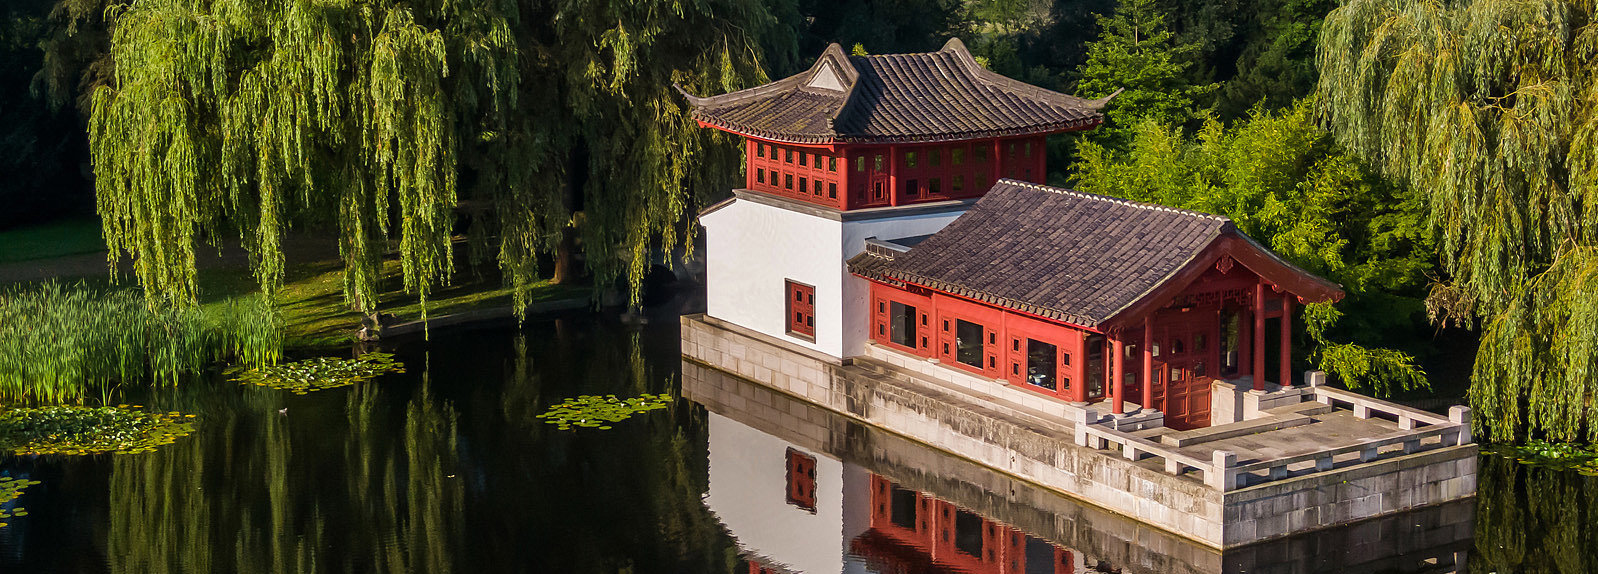 Luftbild des Steinboots mit Pavillon im Chinesischen Garten der Gärten der Welt